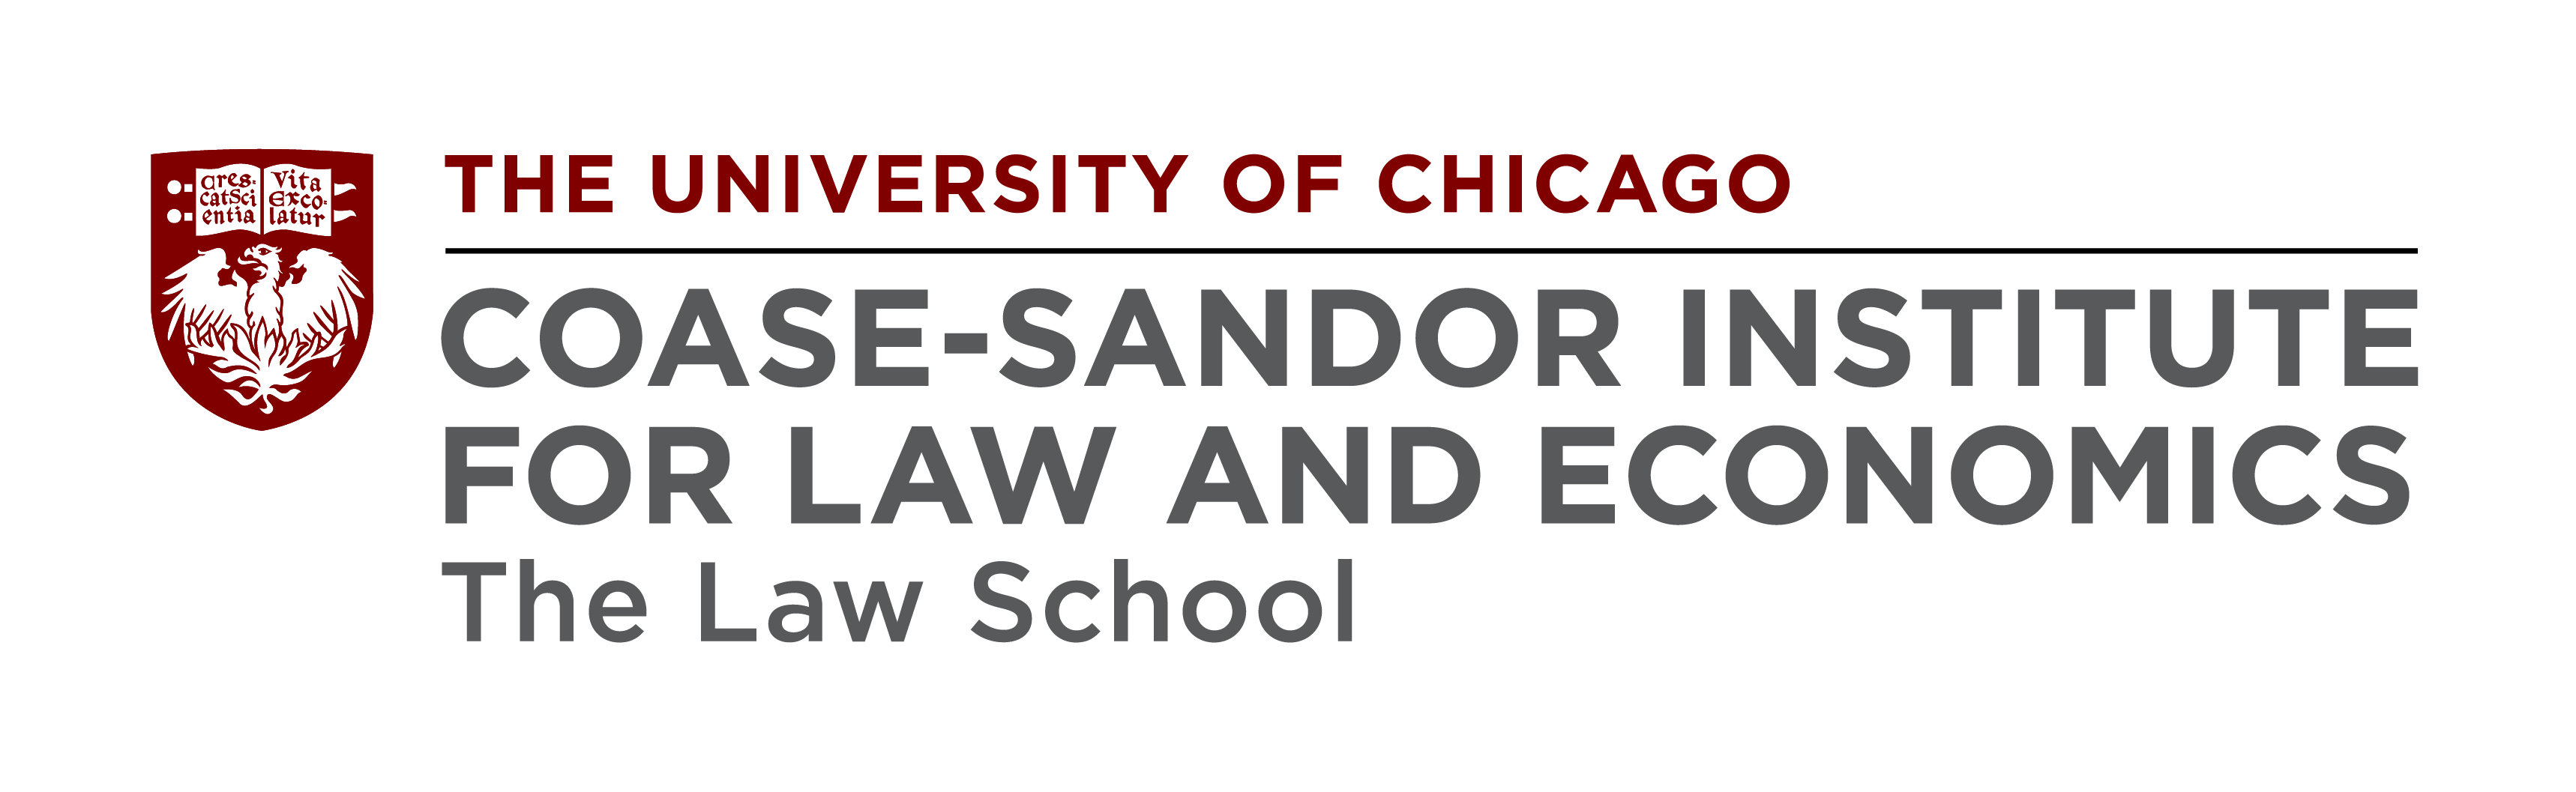 Coase-Sandor Institute for Law and Economics